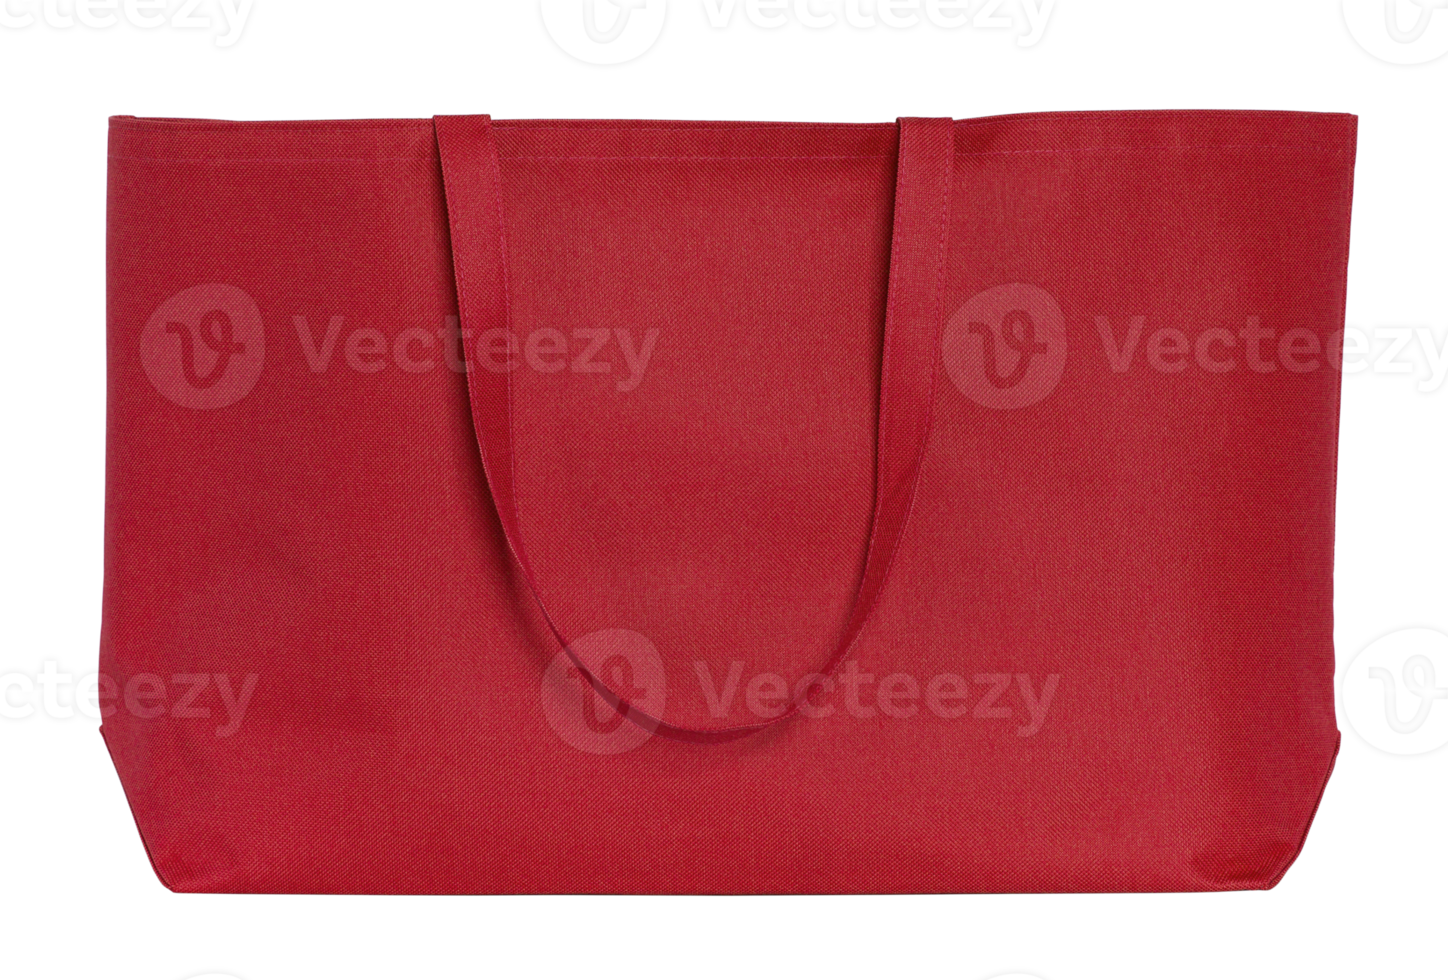 saco de tecido vermelho isolado com traçado de recorte para maquete png